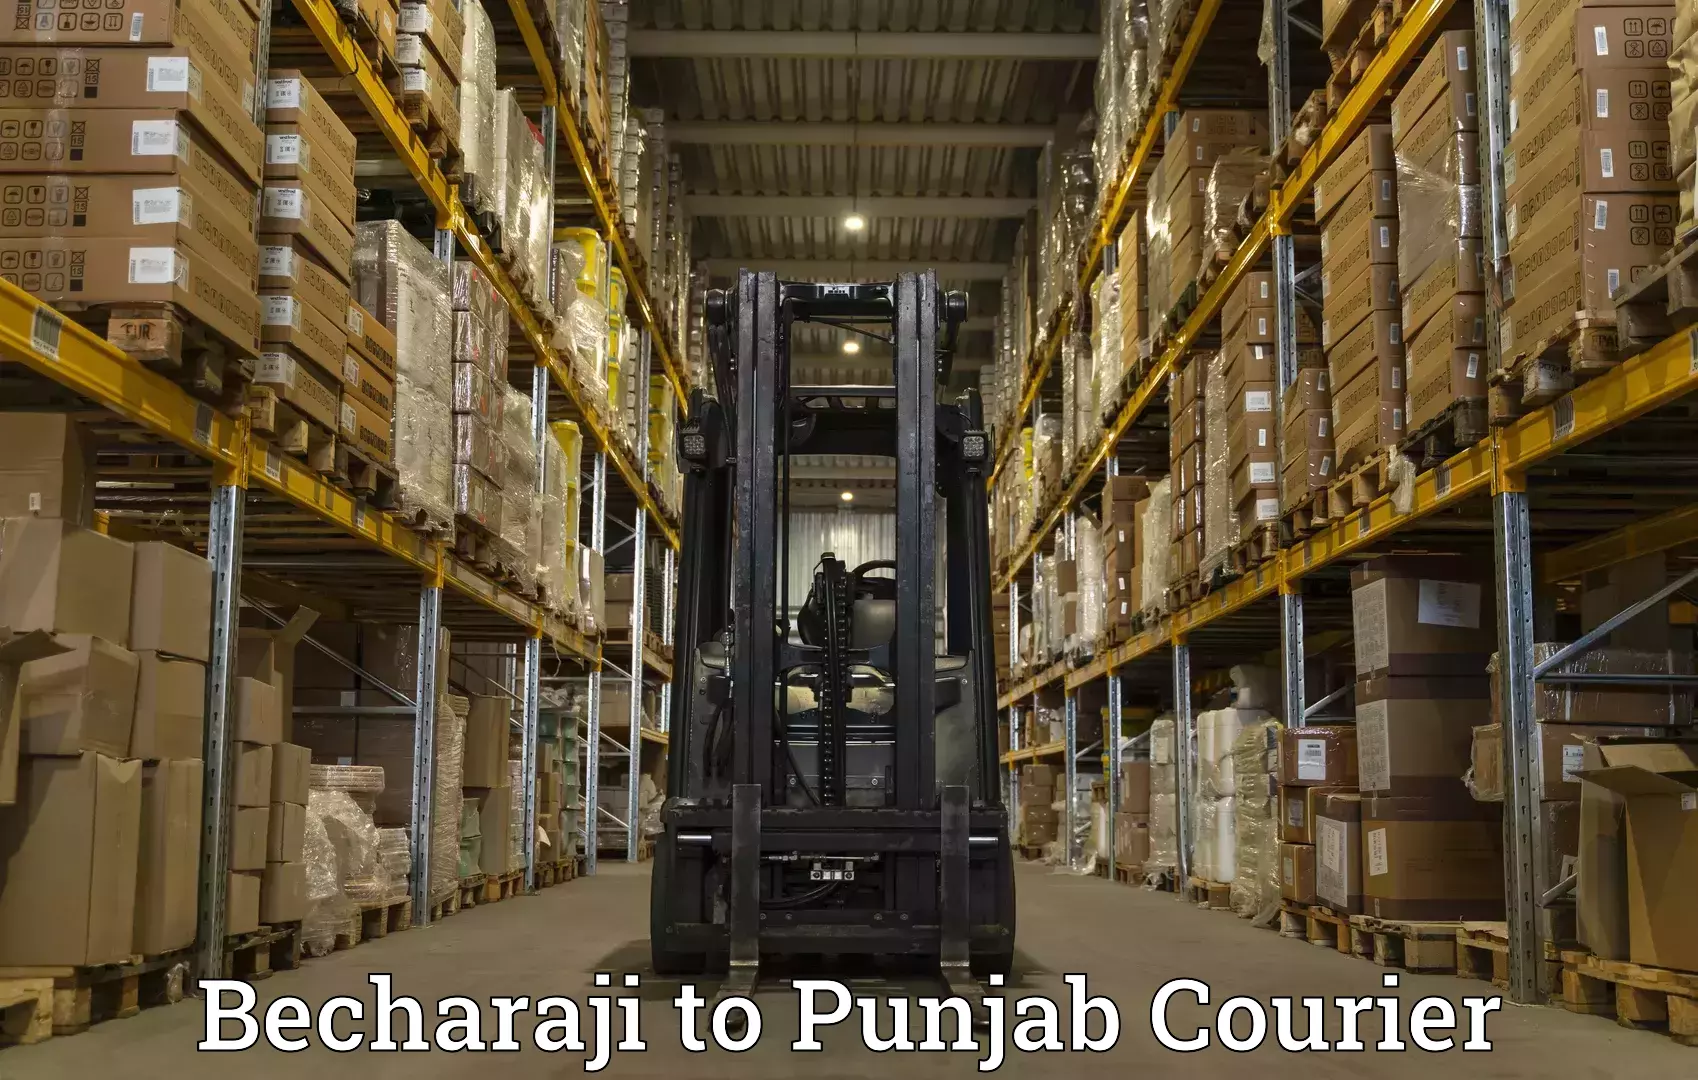 Expedited parcel delivery in Becharaji to Jalandhar